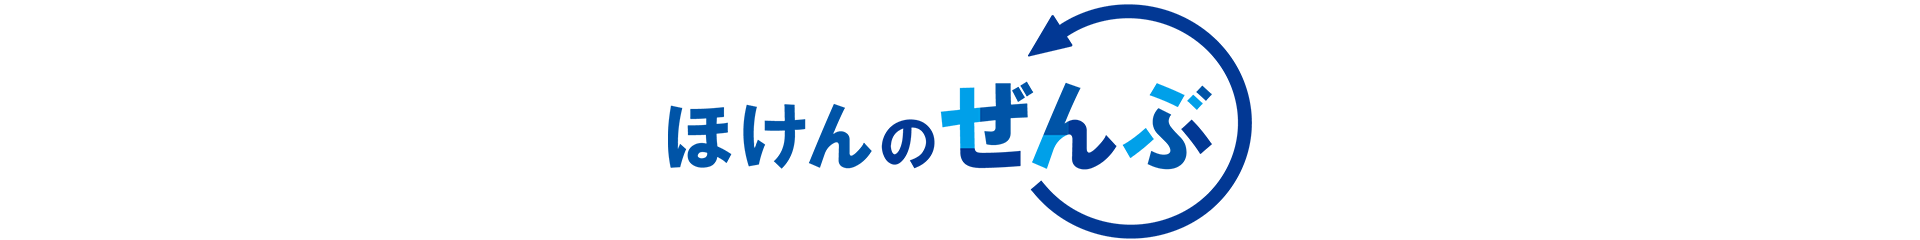 web-mendan-logo